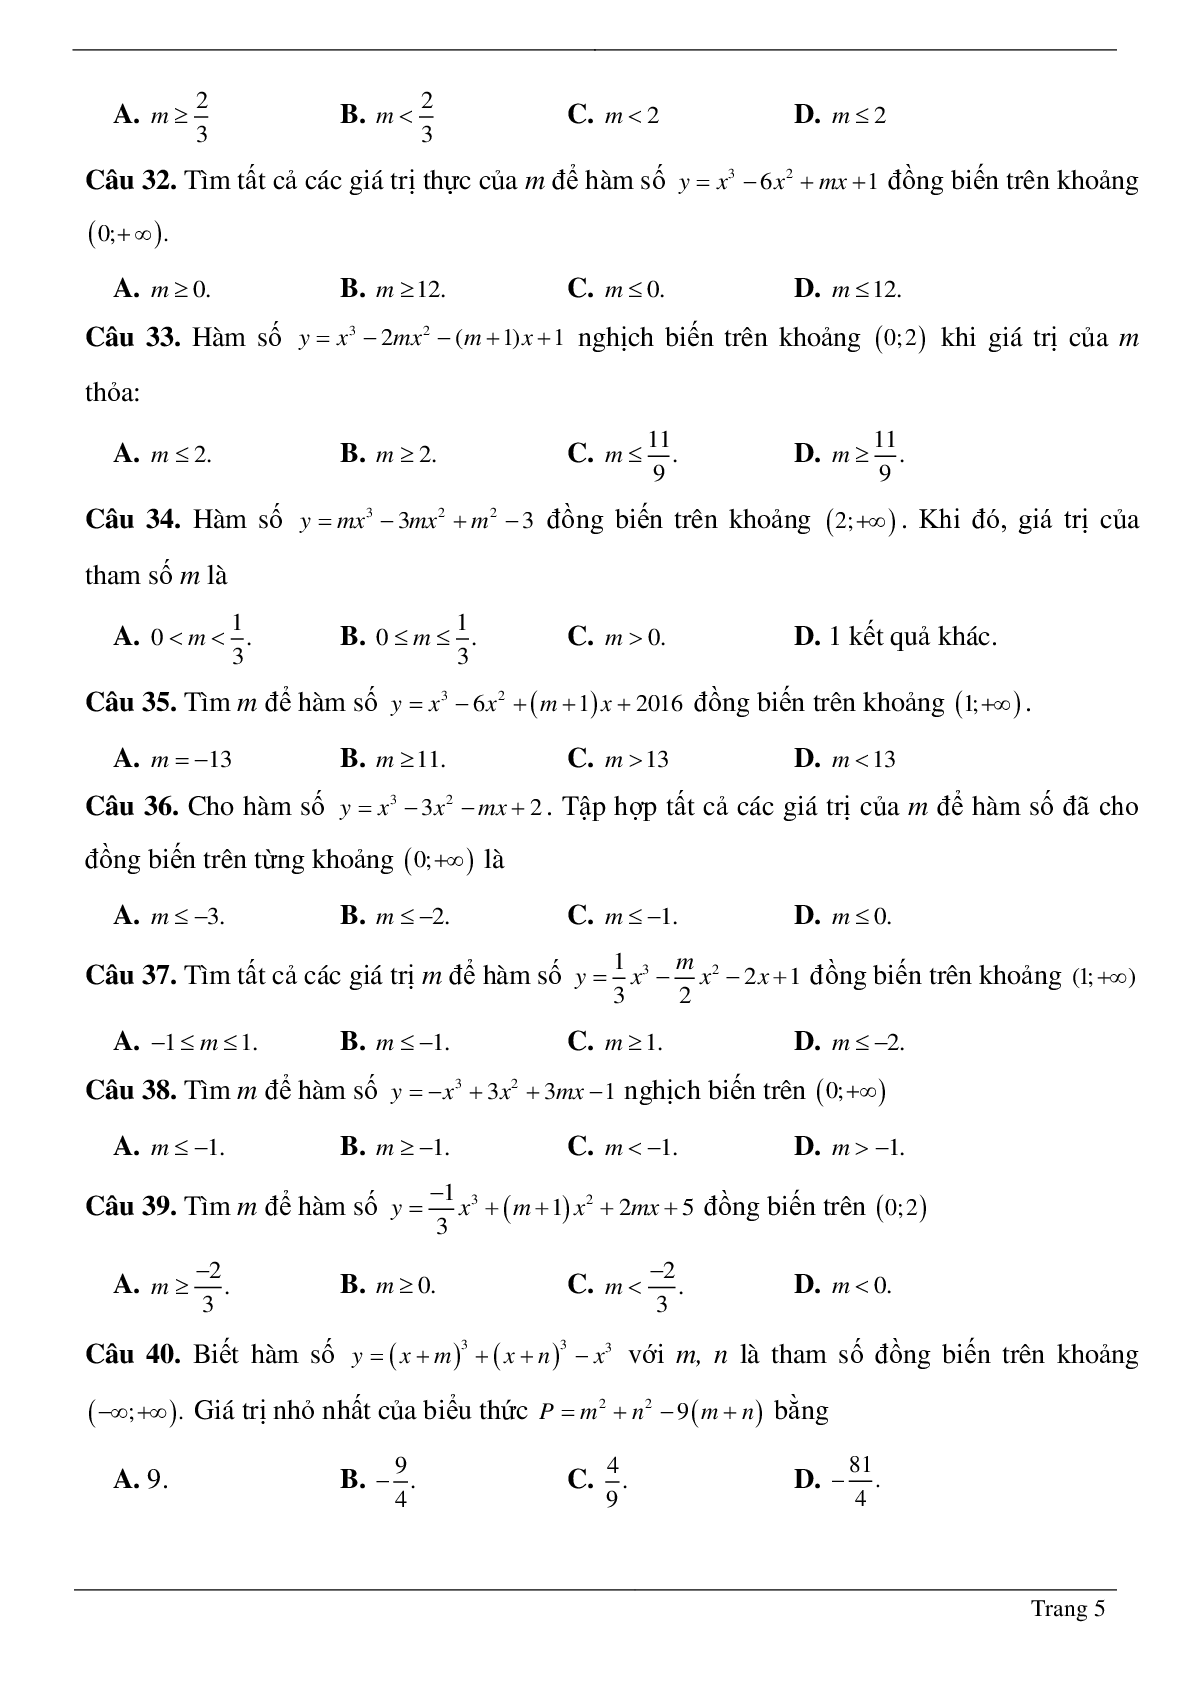 Tìm tham số M để hàm số bậc ba đồng biến, nghịch biến trên khoảng K cho trước (trang 5)